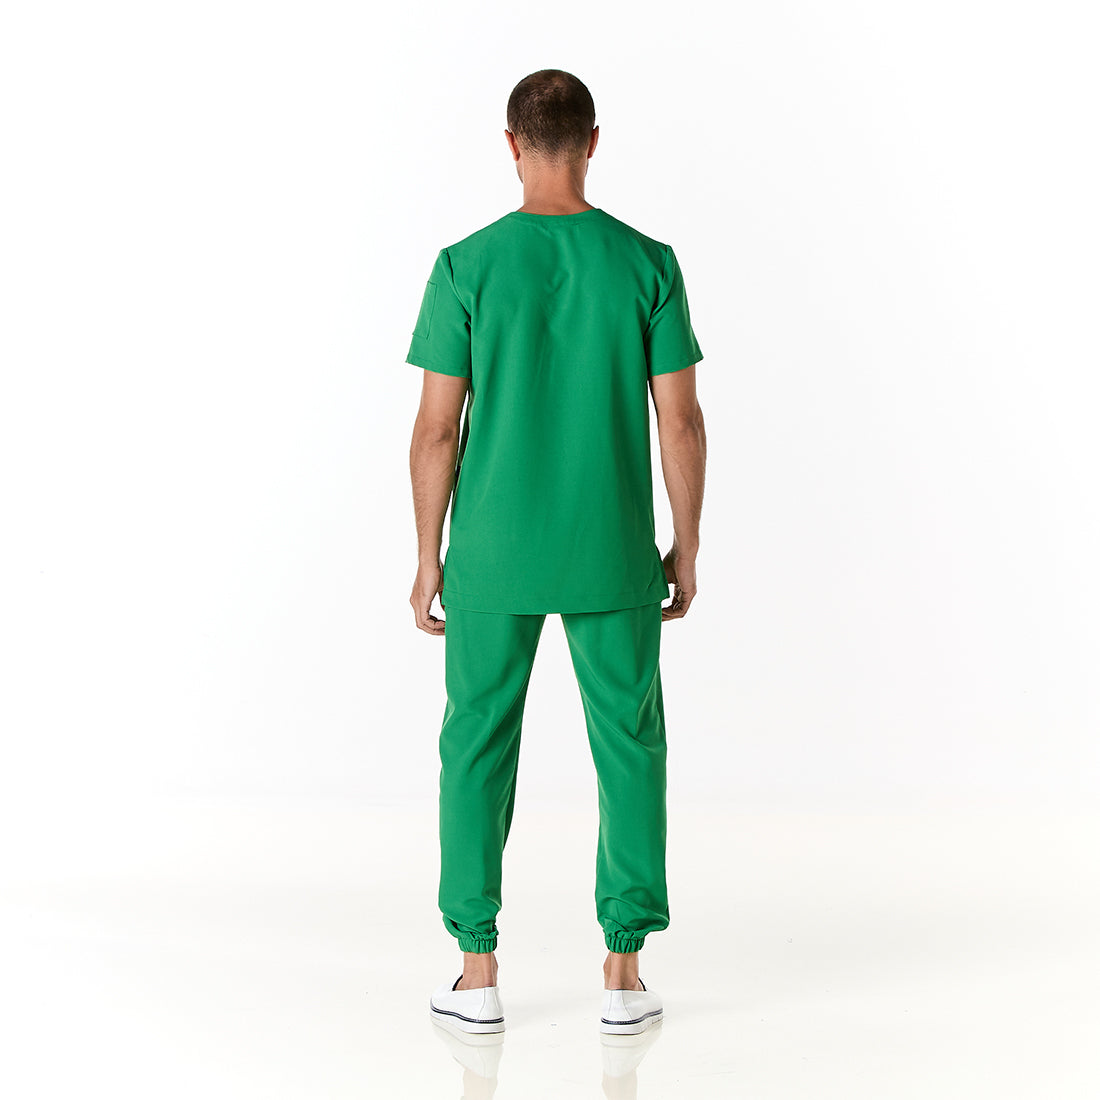 Hombre vistiendo pijama sanitario color verde perico con cuello en v y pantalon tipo jogger - espalda